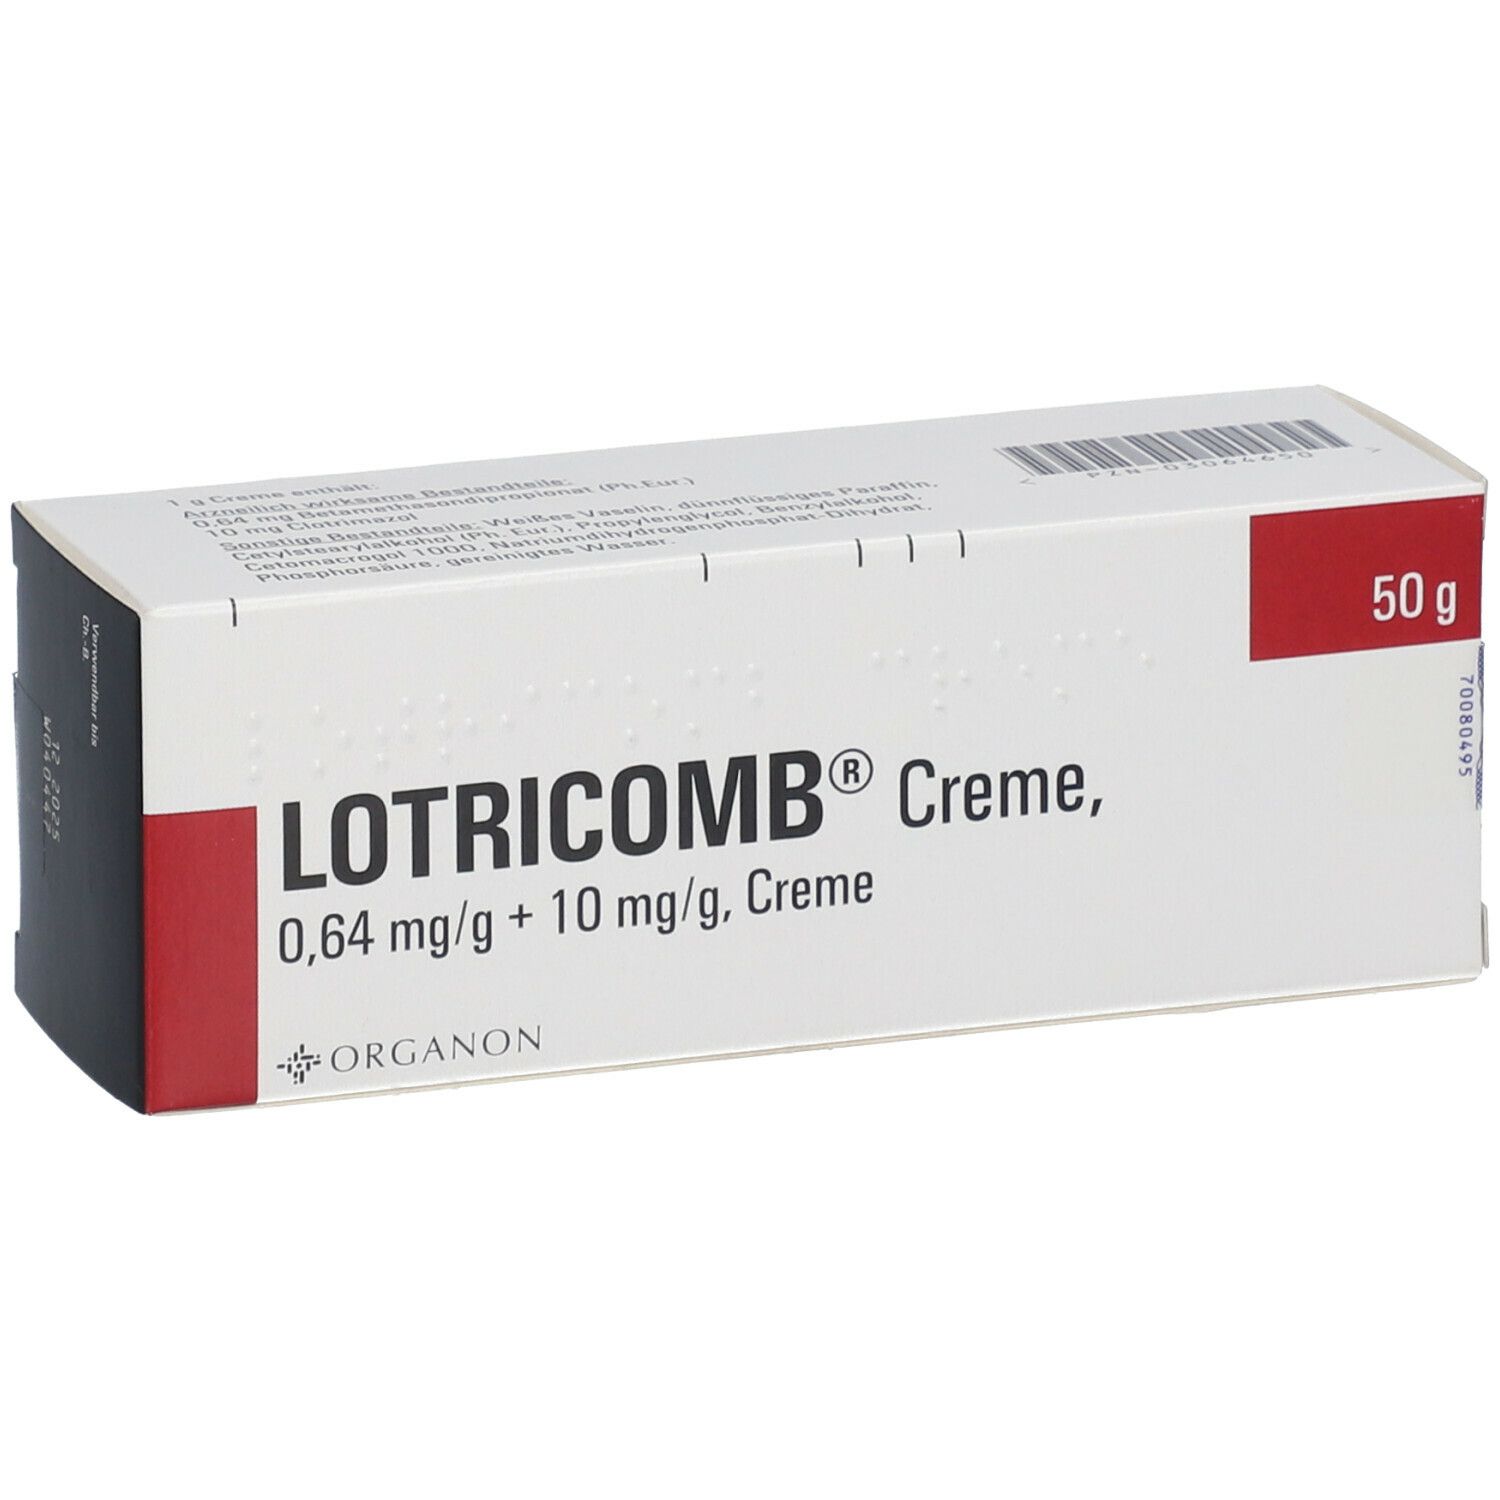 LOTRICOMB® Creme 0,64 mg/g + 10 mg/g